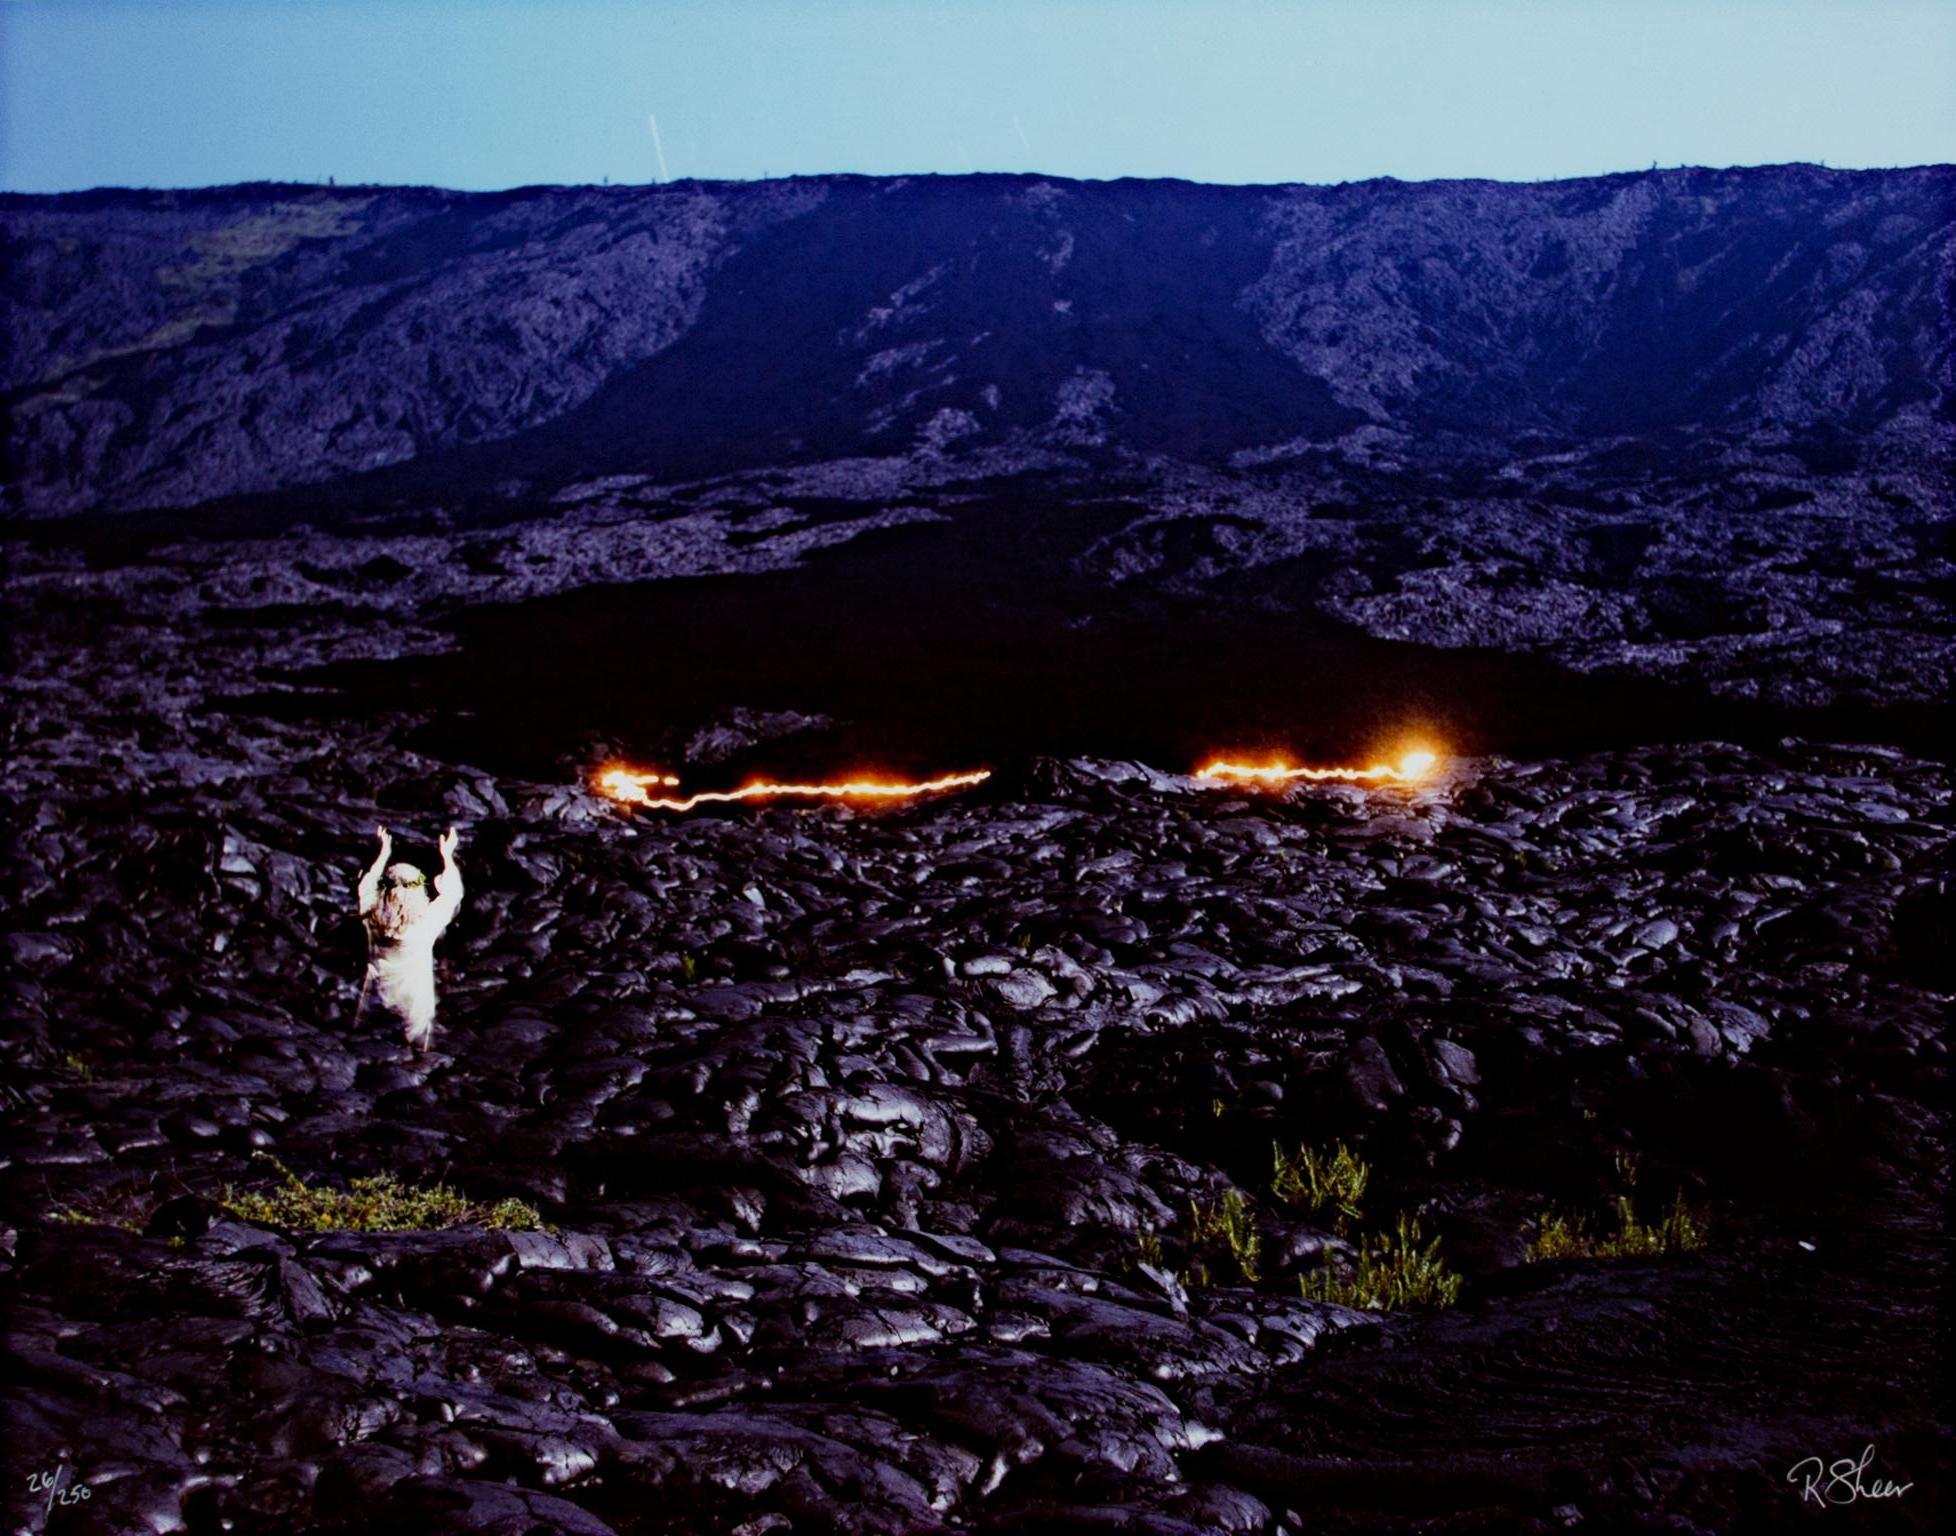 Robert Kawika Sheer Landscape Photograph – Landschaftsfotografie Contemporary Modern Performance Art Hawaii Travel Signed